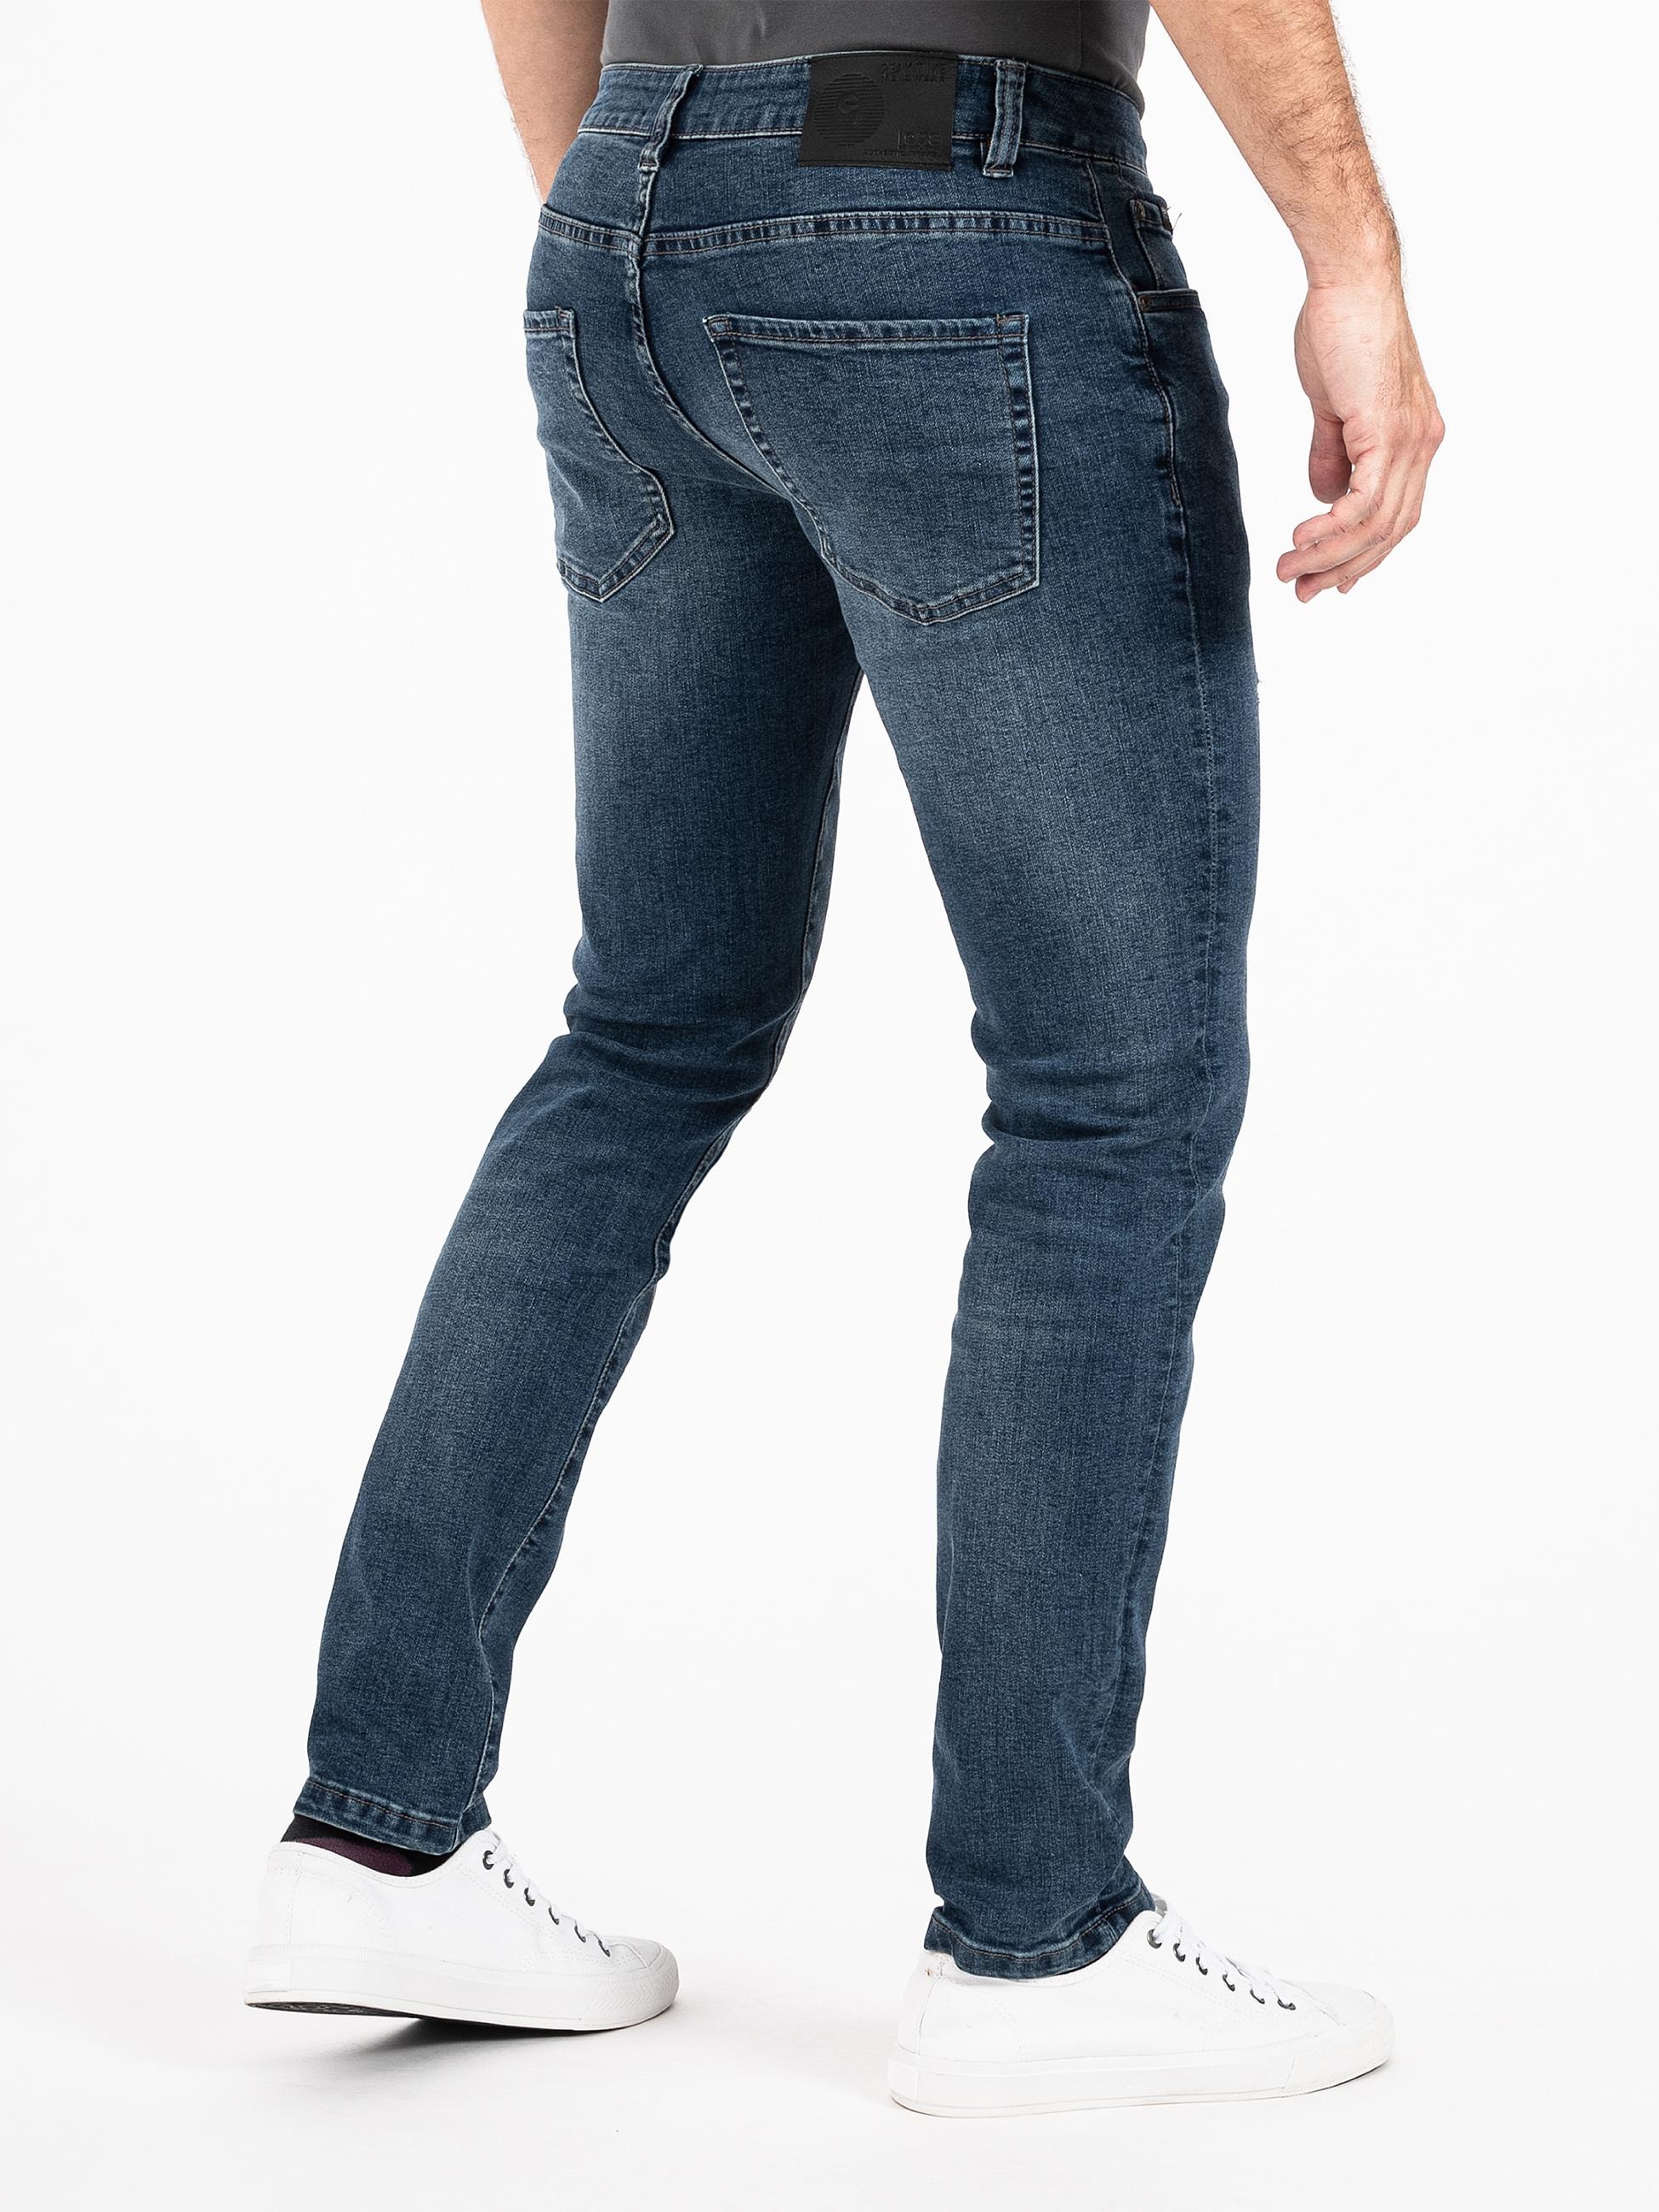 PEAK TIME Slim-fit-Jeans »München«, Herren Jeans mit Stretch-Bund und Destroyed-Optik